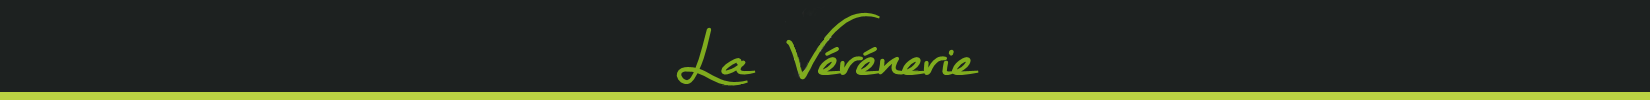 Photo logo - Bienvenue à la Vérénerie -  Chambres et table d'hôtes